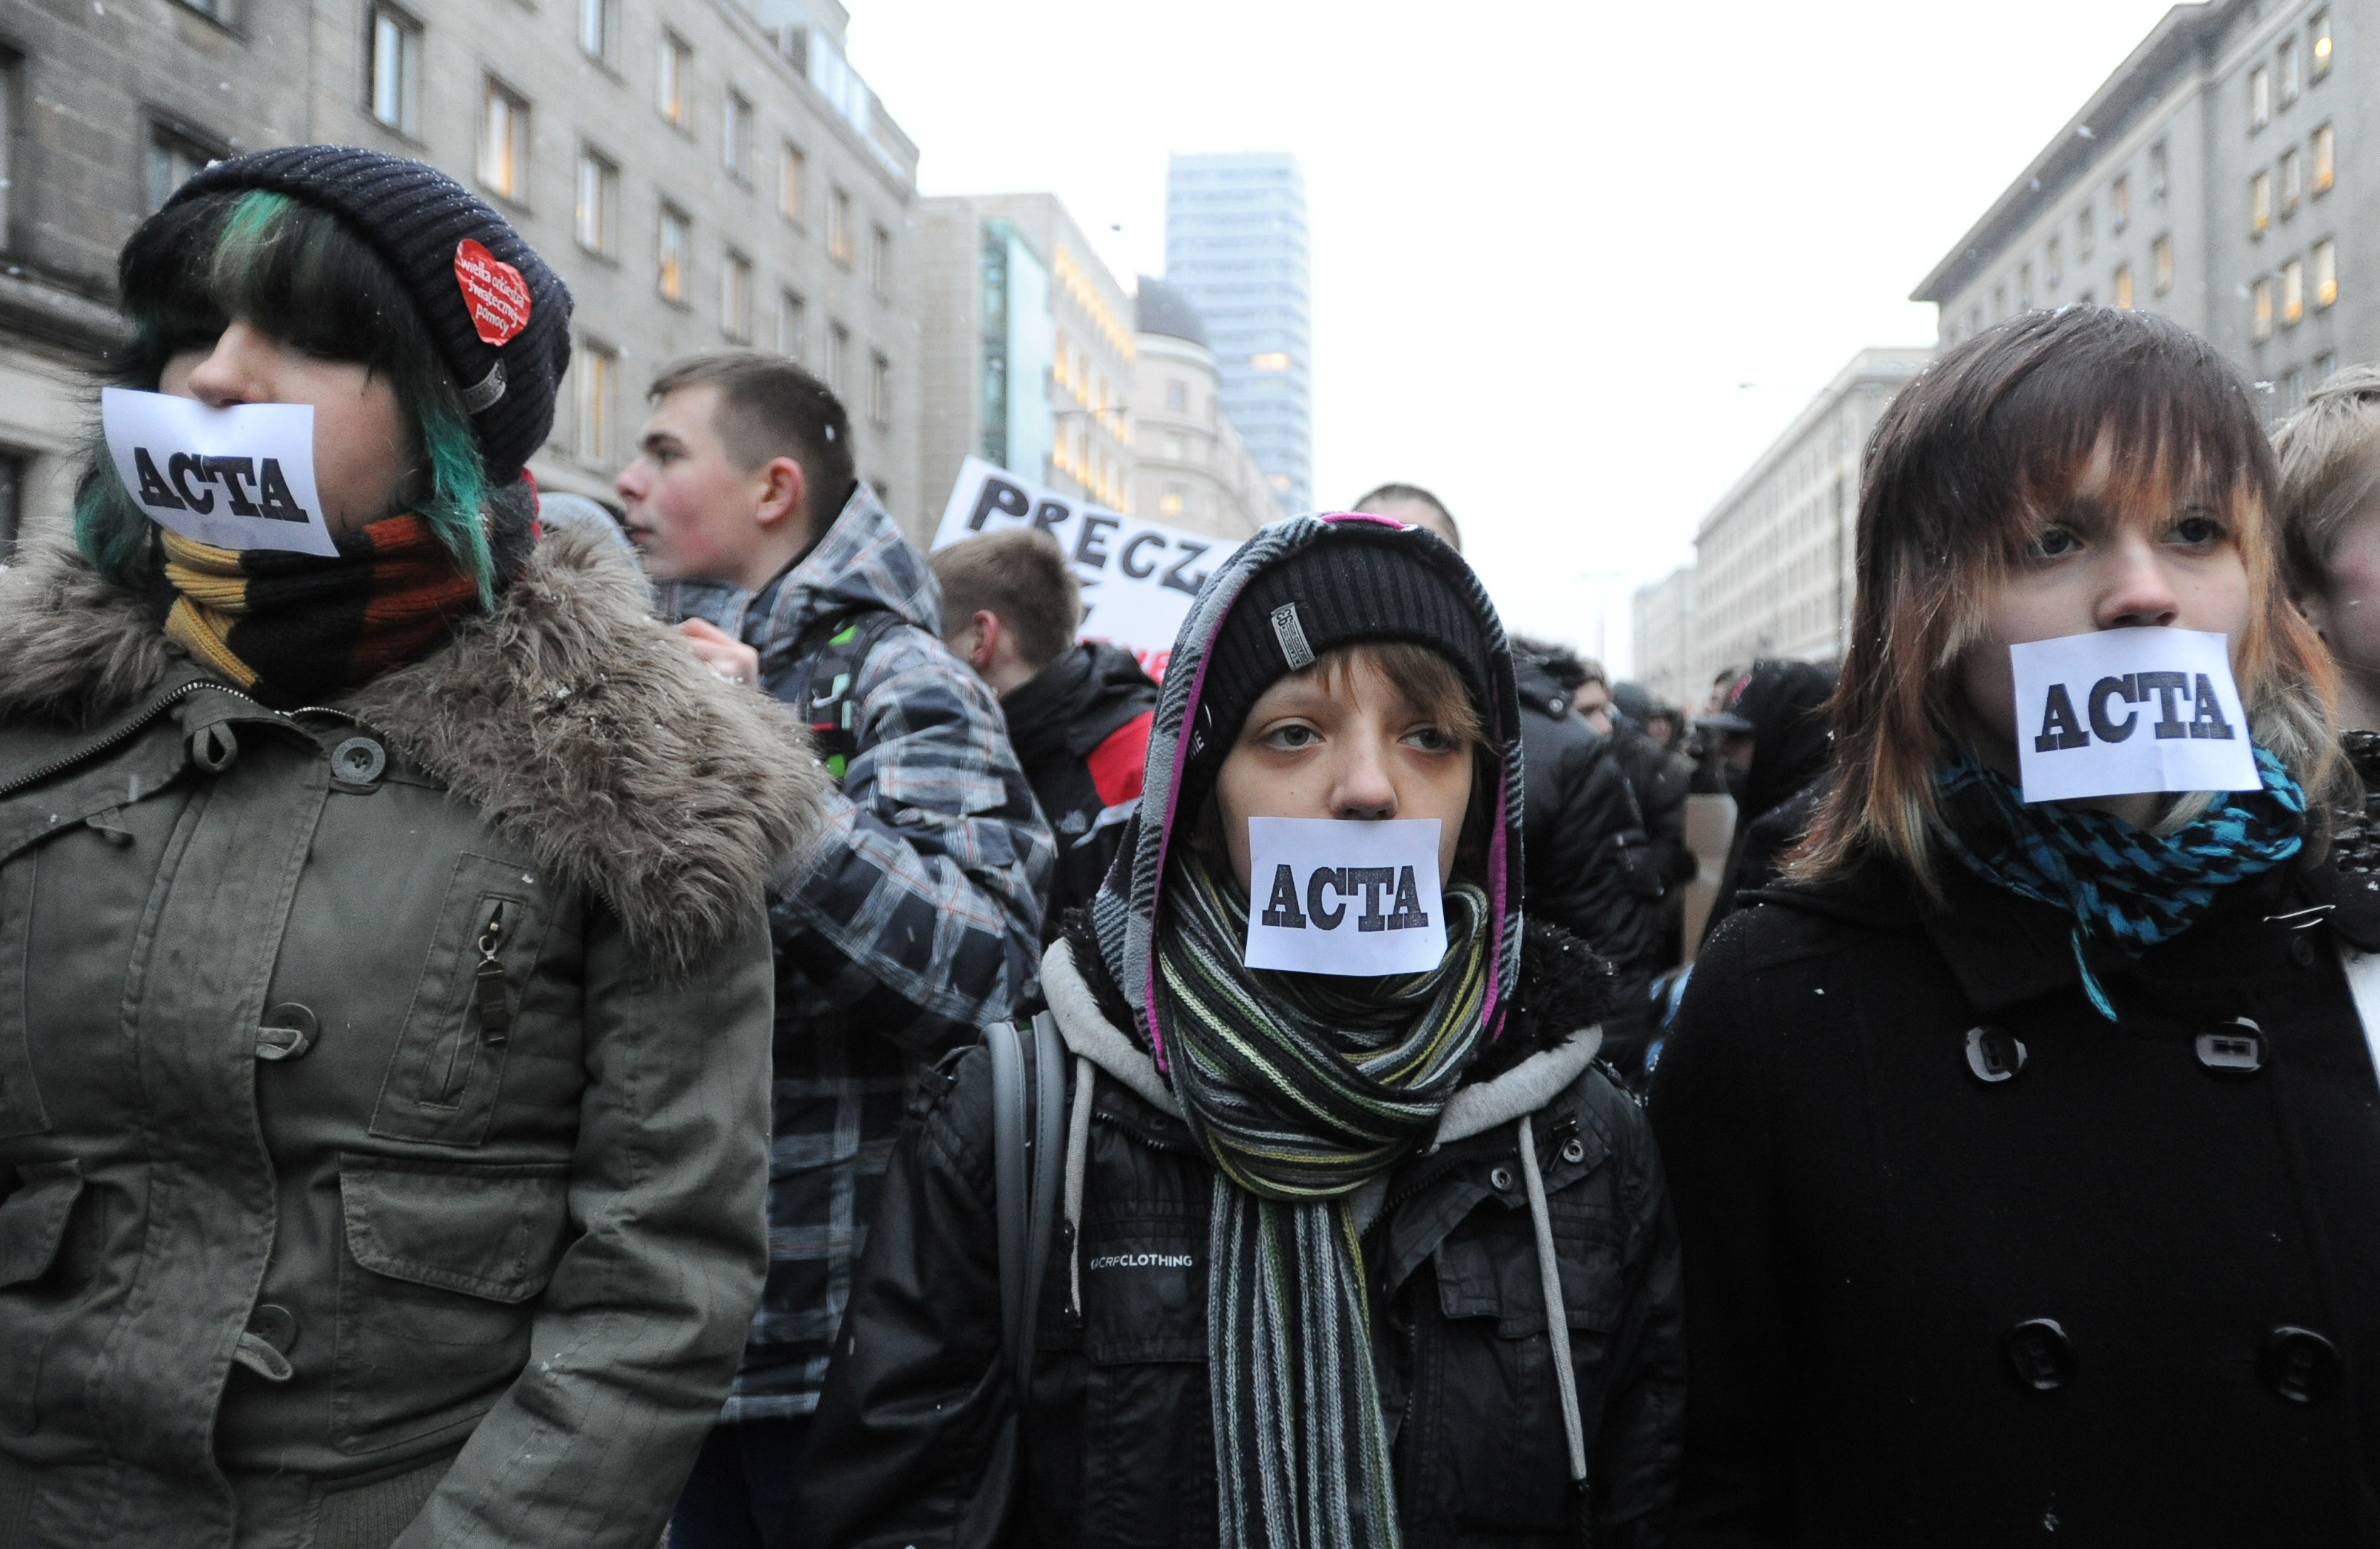 Över hela Europa har människor protesterat mot Acta.